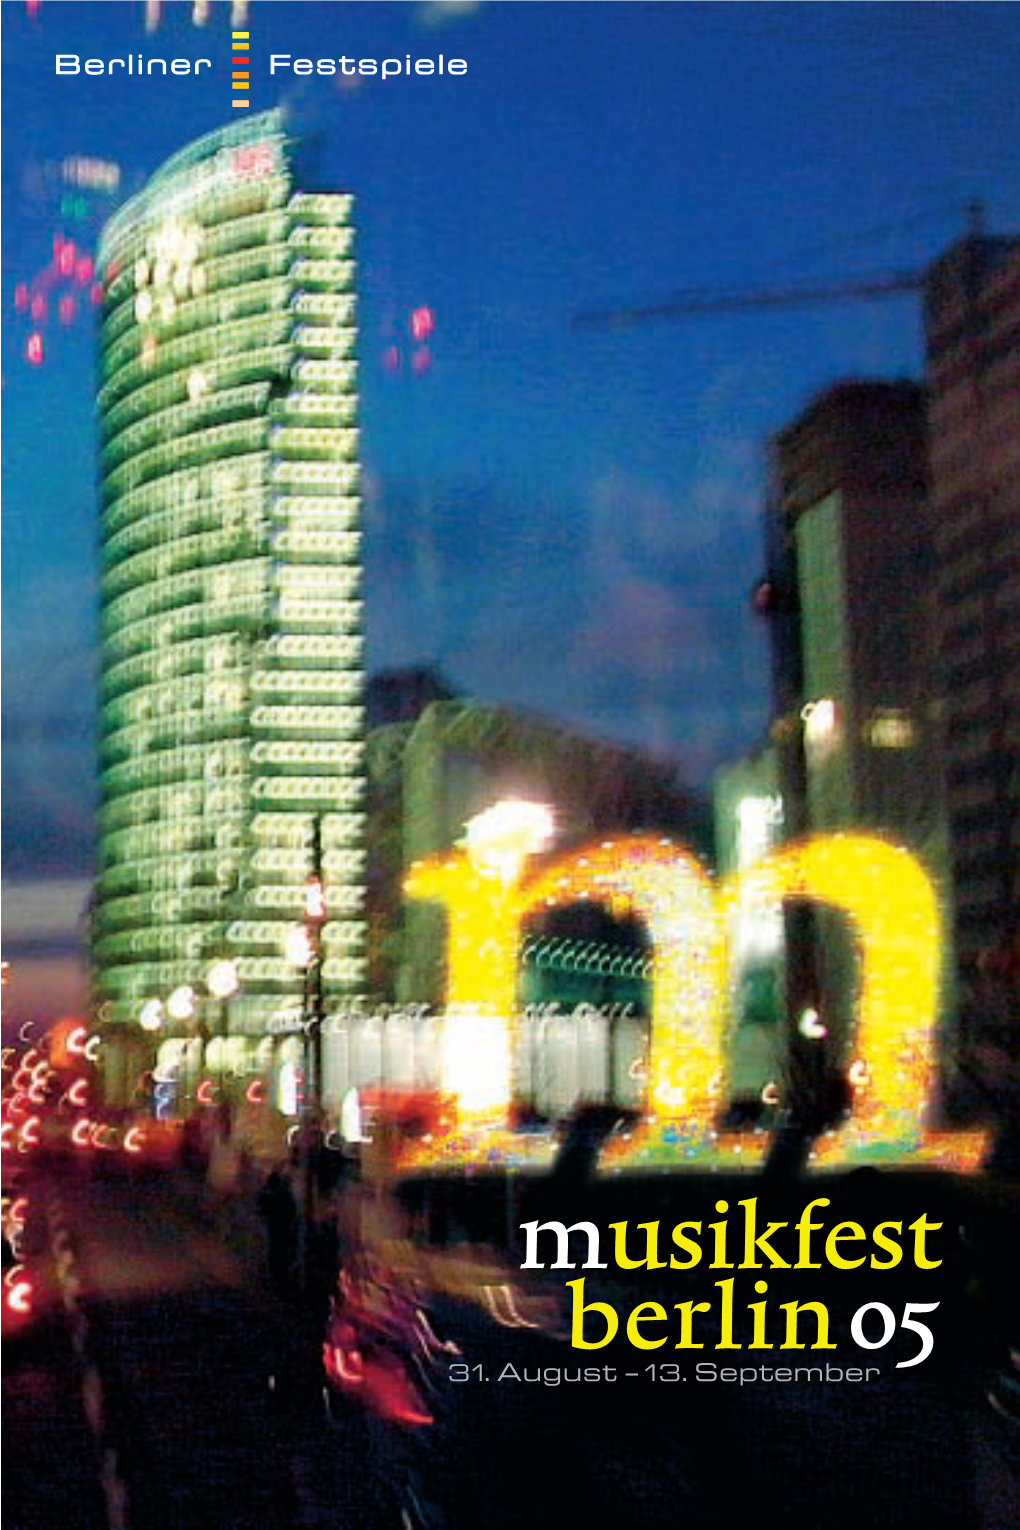 Musikfest Berlin05